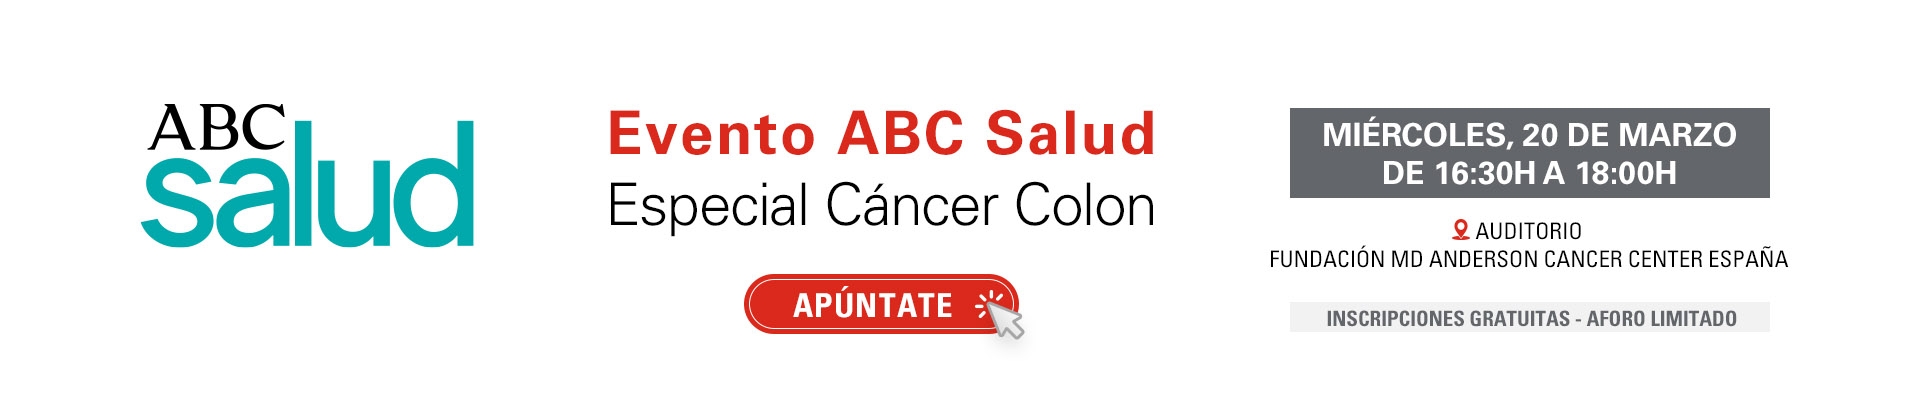 Evento ABC Salud: Especial Cáncer de Colon